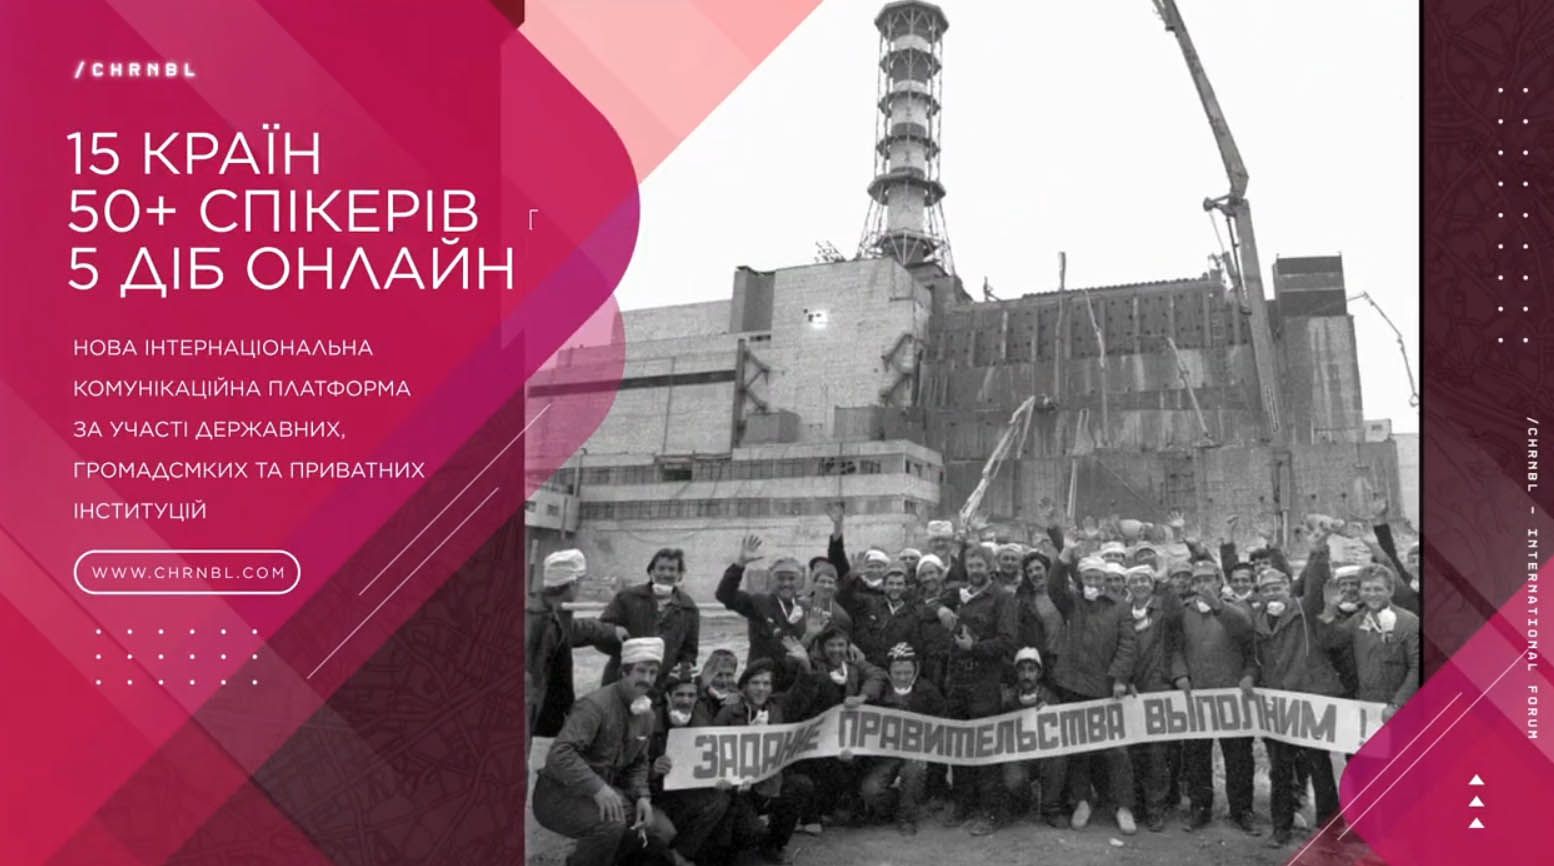 Київ: Форум присвятили переосмисленню Чорнобиля